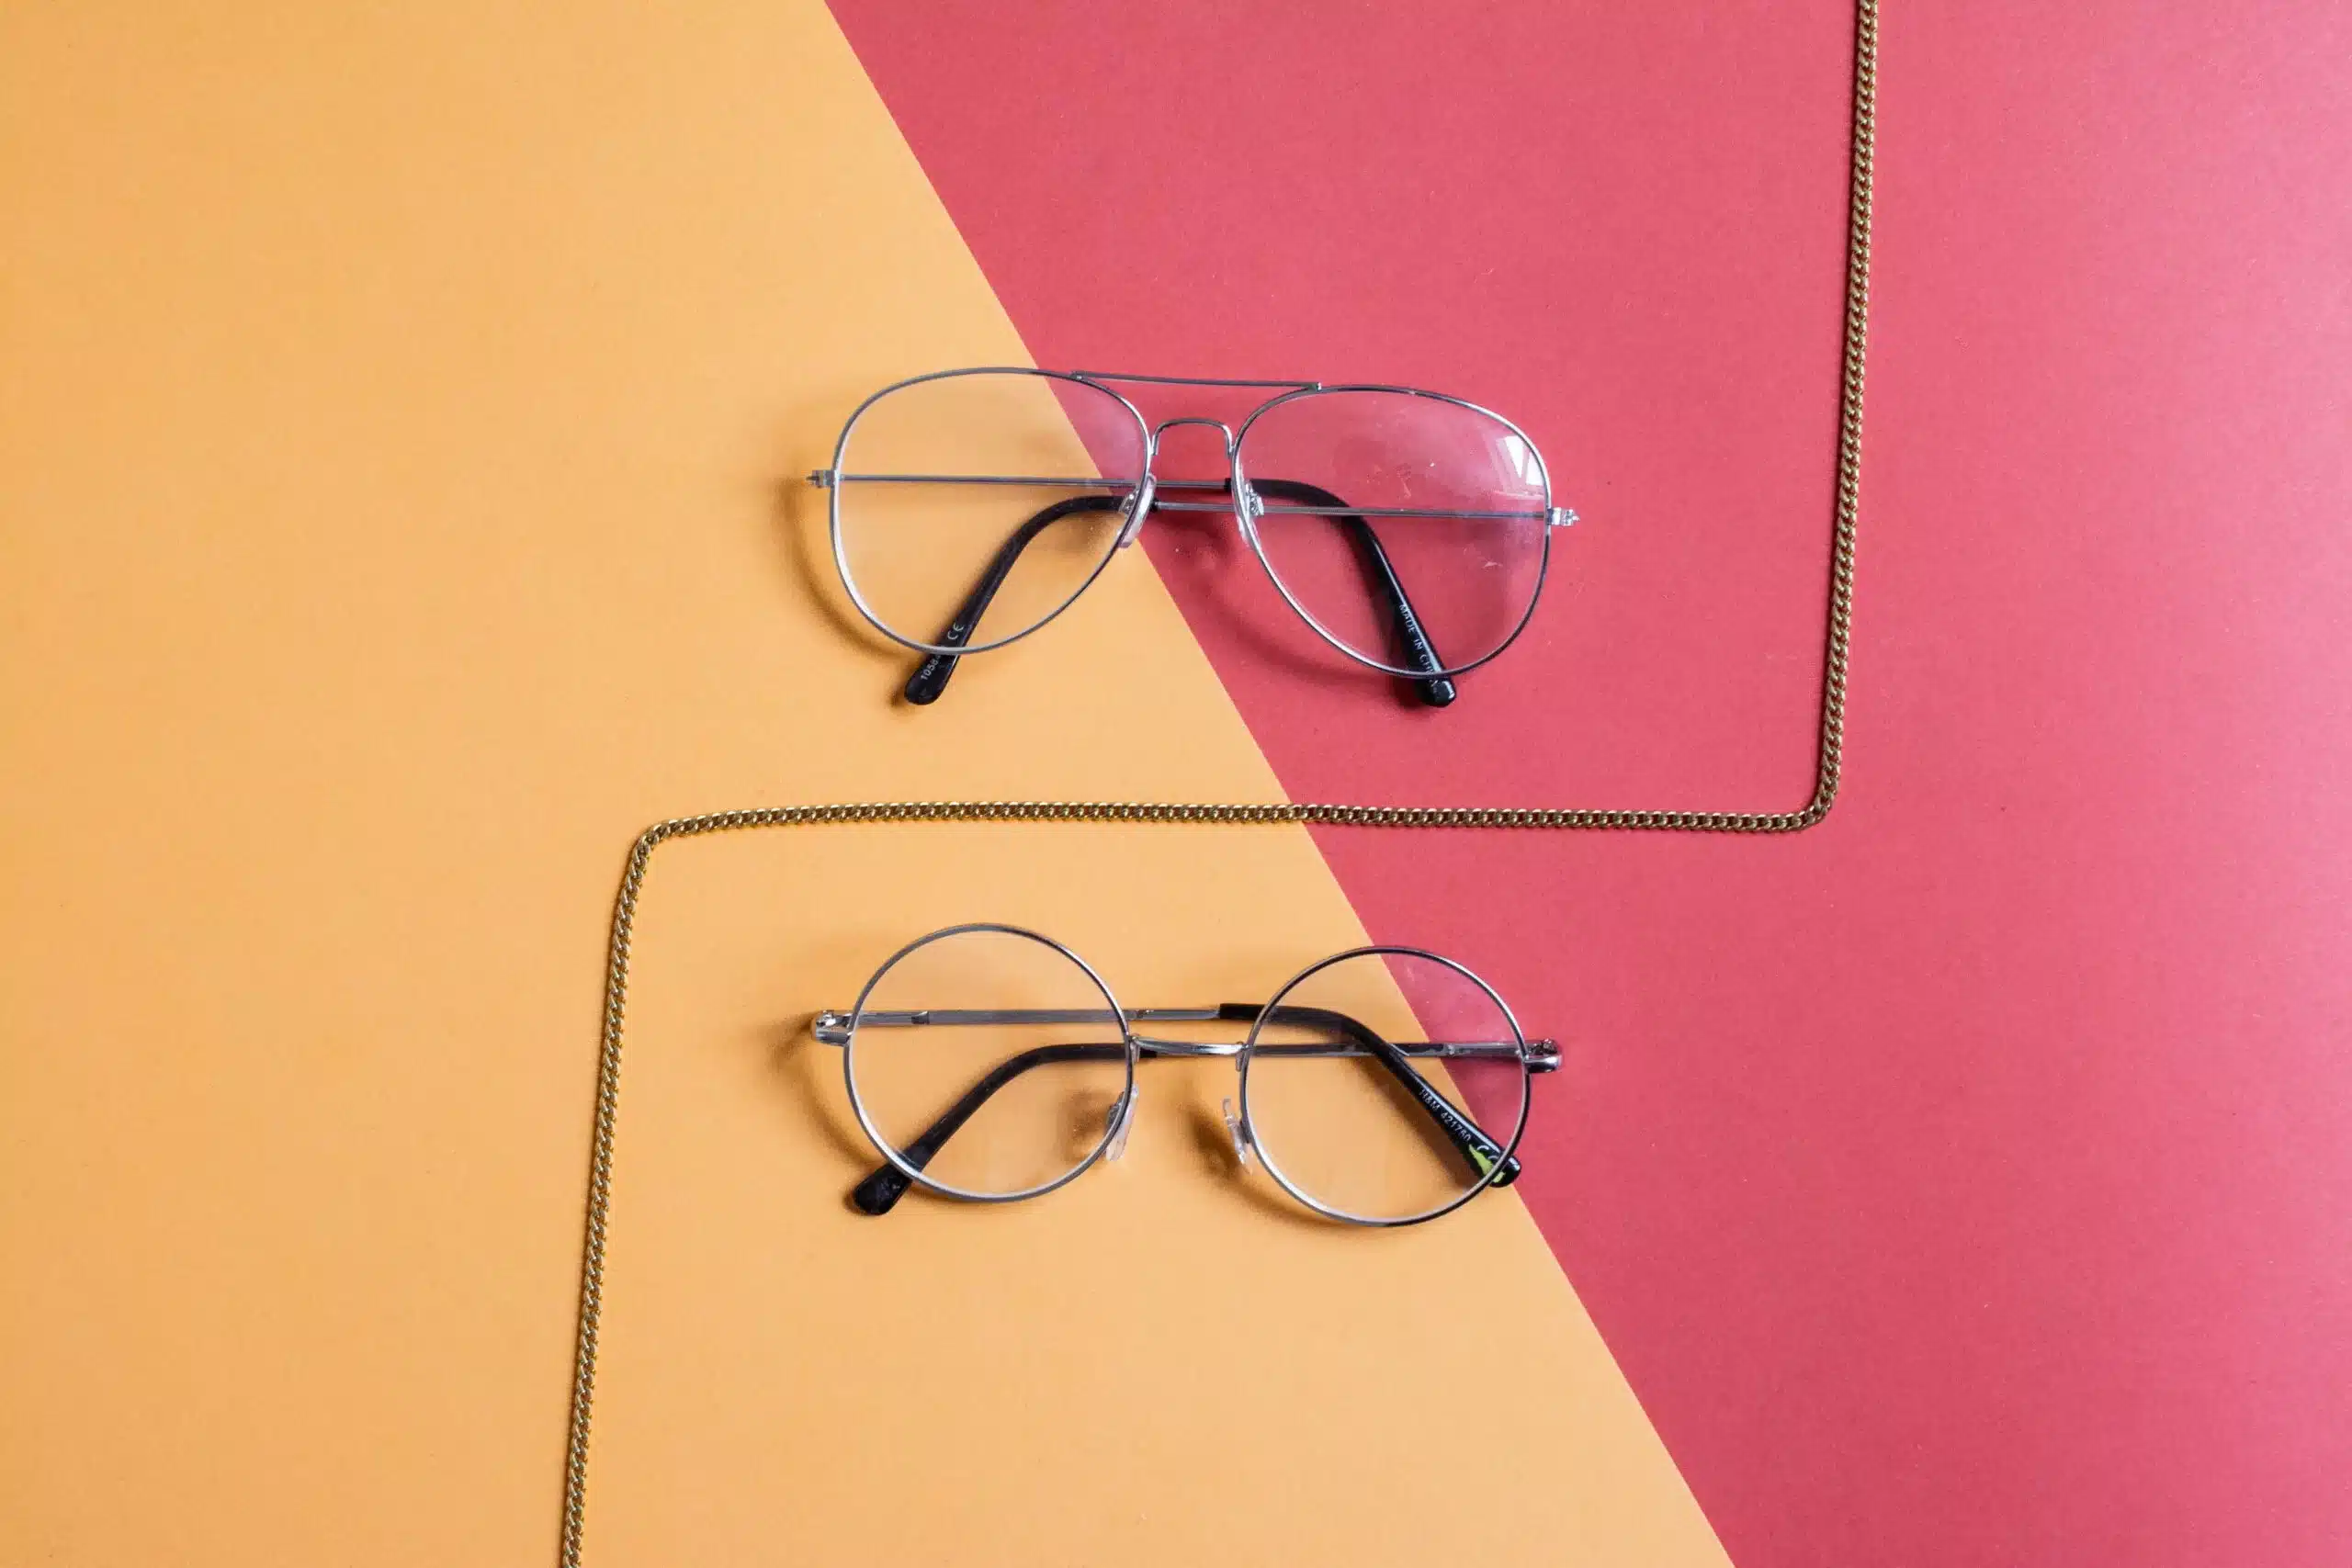 fabrication de lunettes sur mesure